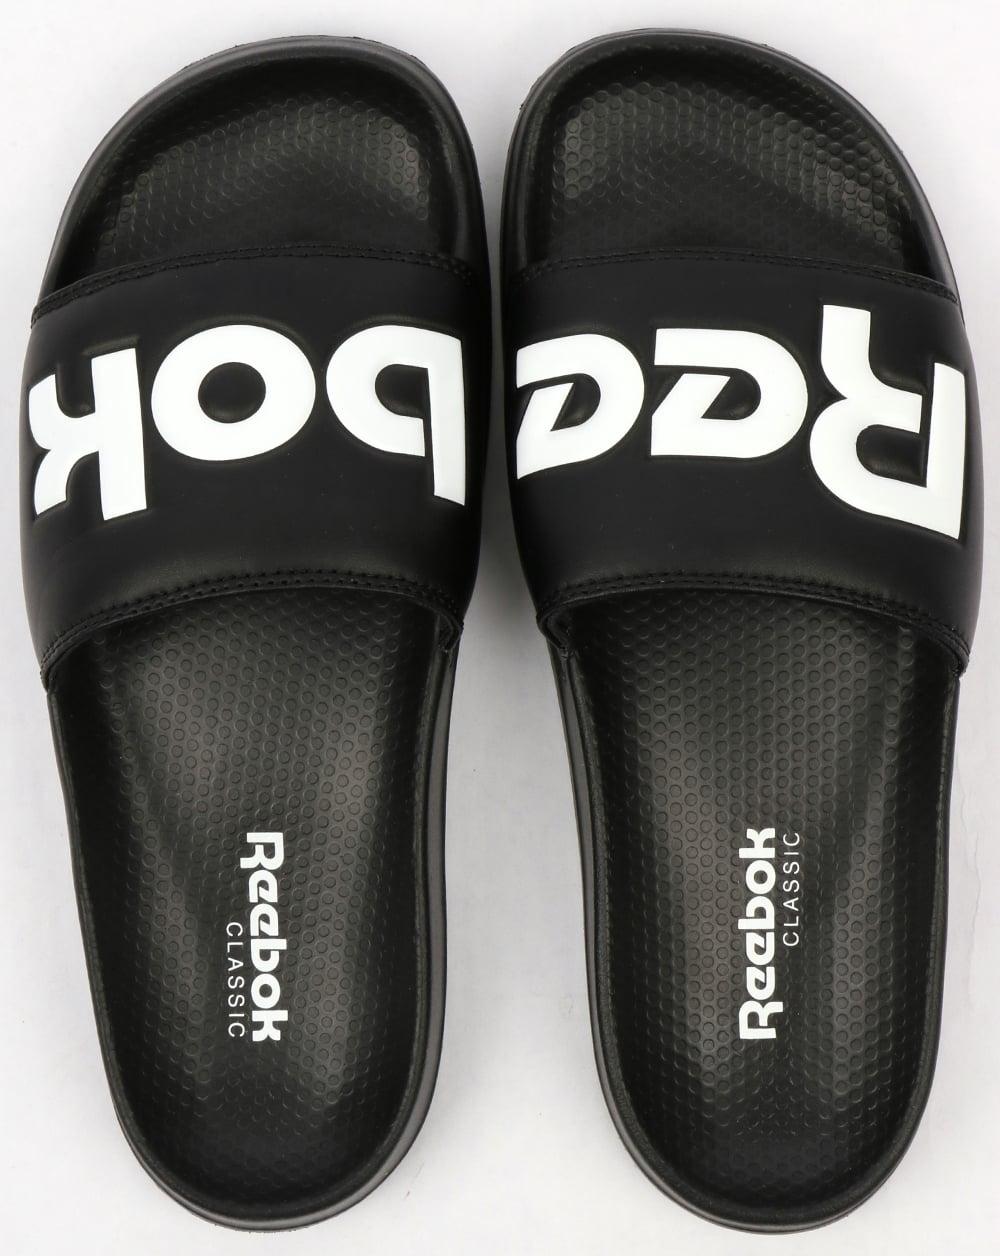 Black Reebok Logo - Reebok Classic Logo Sliders Black,sliders,sandals,pool,flip flops